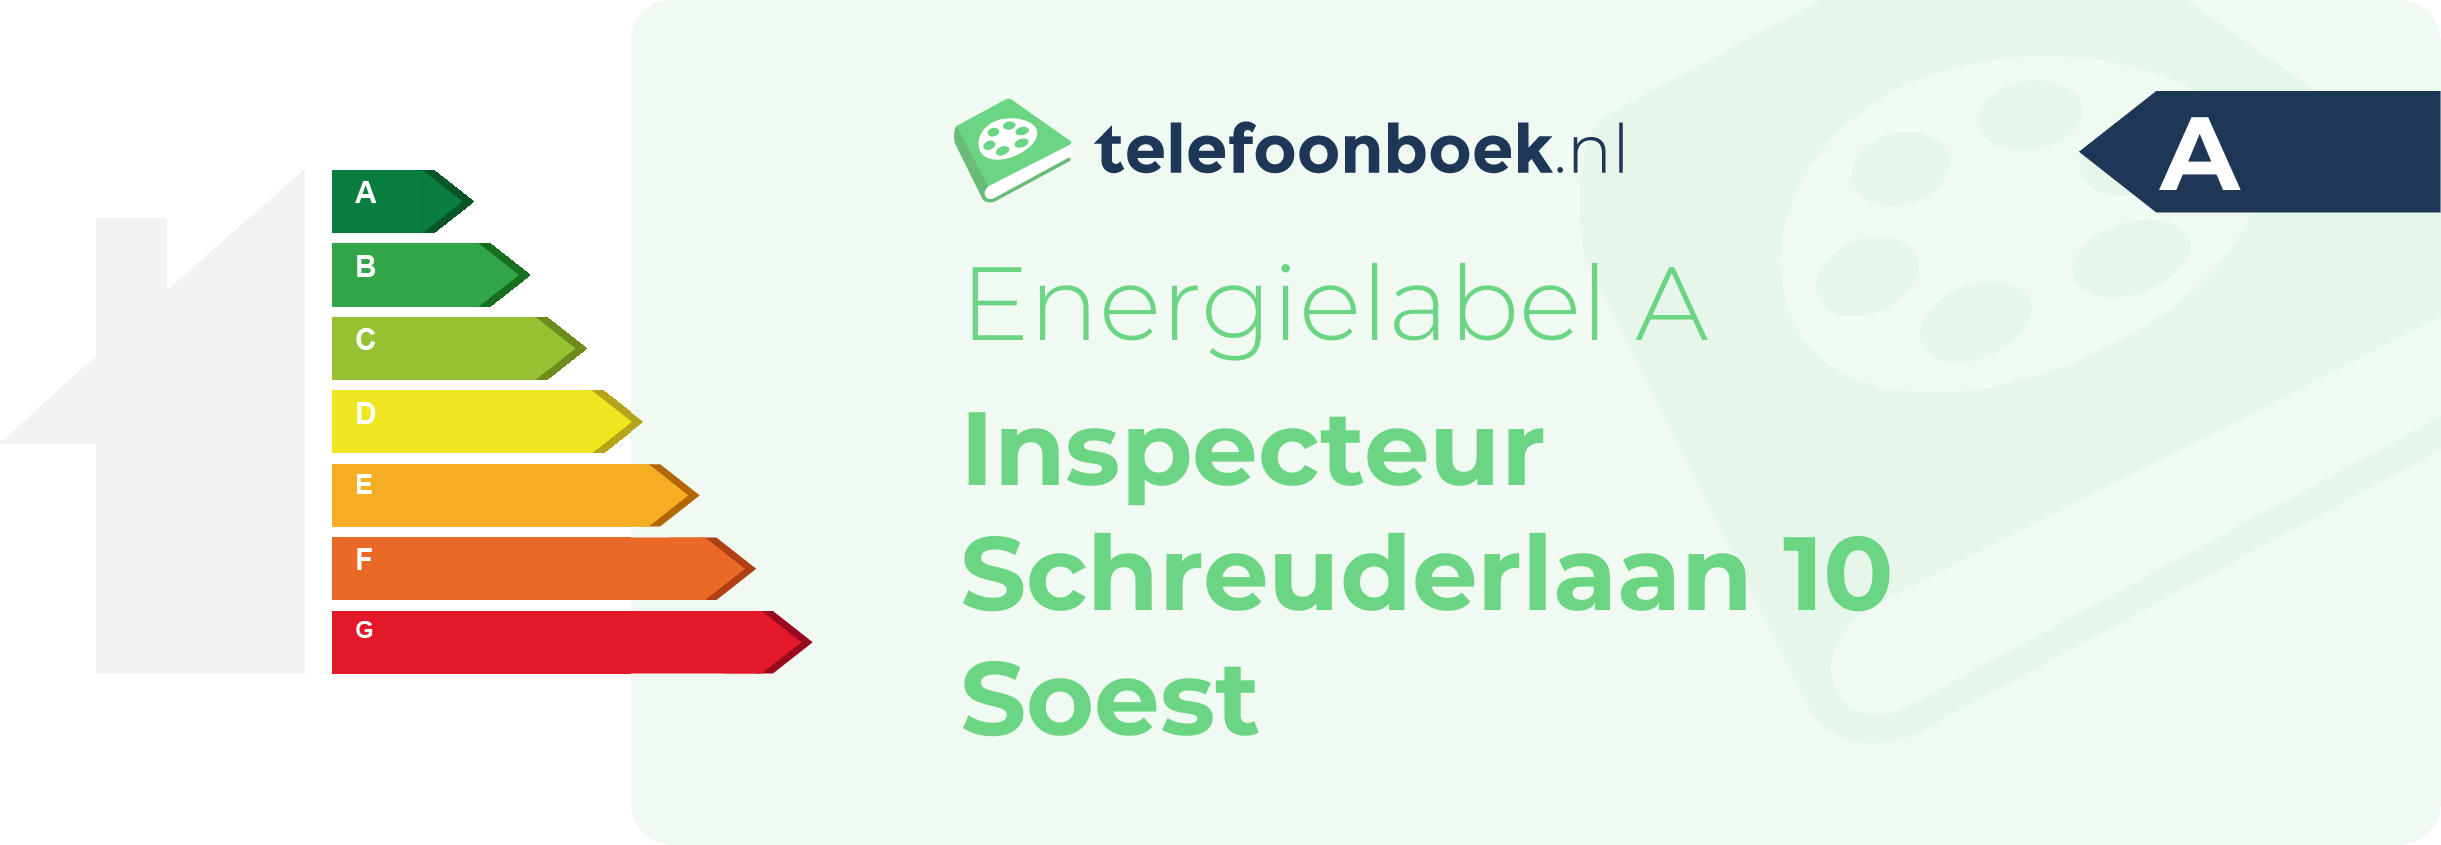 Energielabel Inspecteur Schreuderlaan 10 Soest